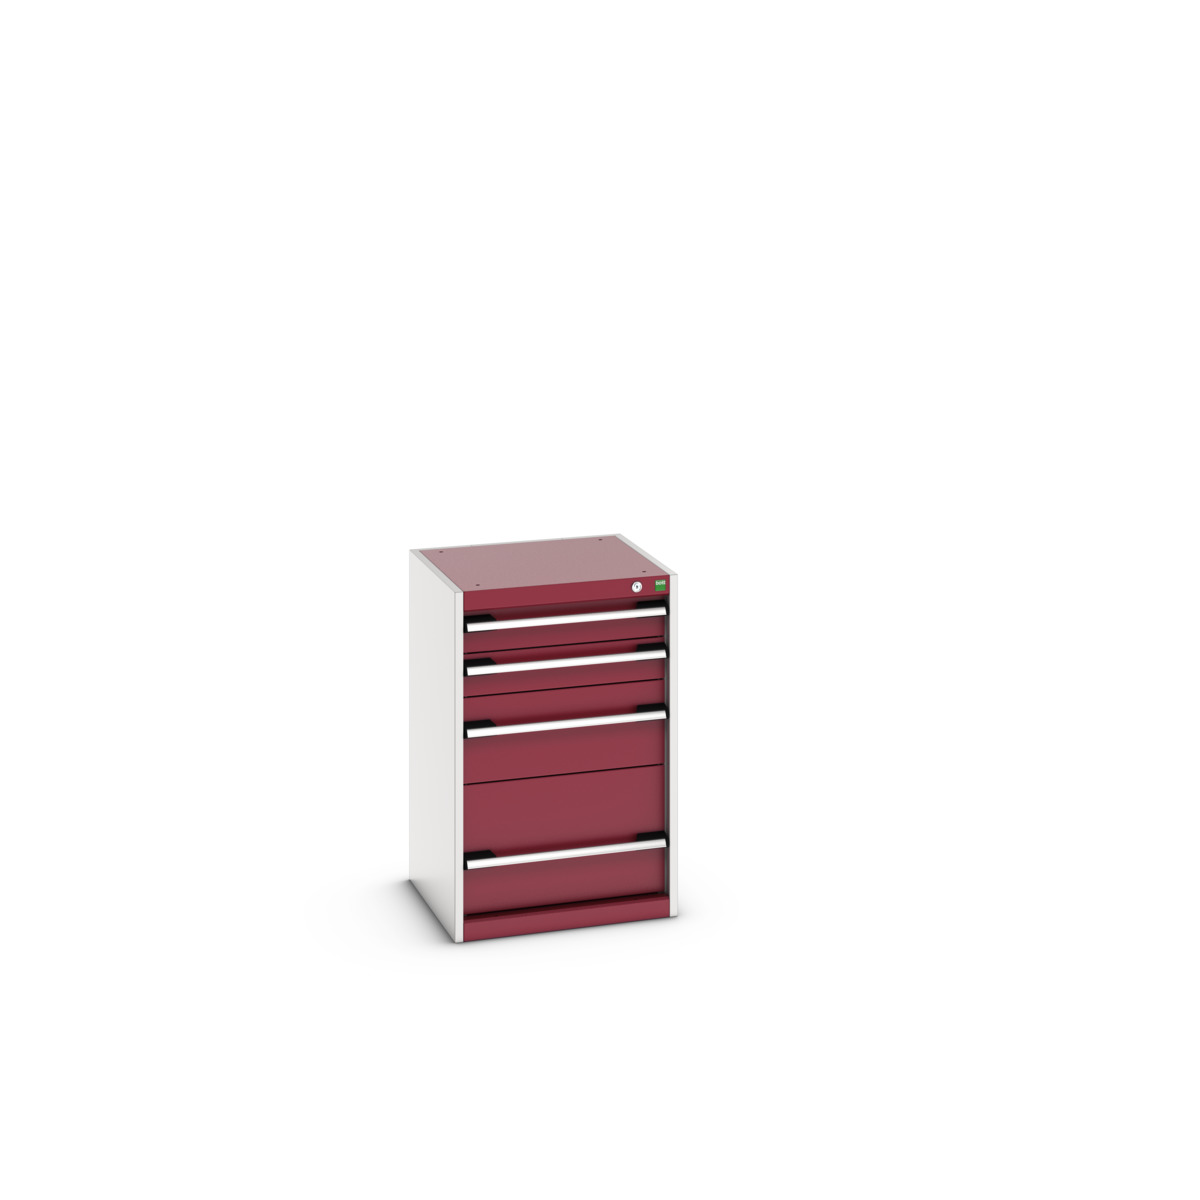 40010025.24V - cubio drawer cabinet